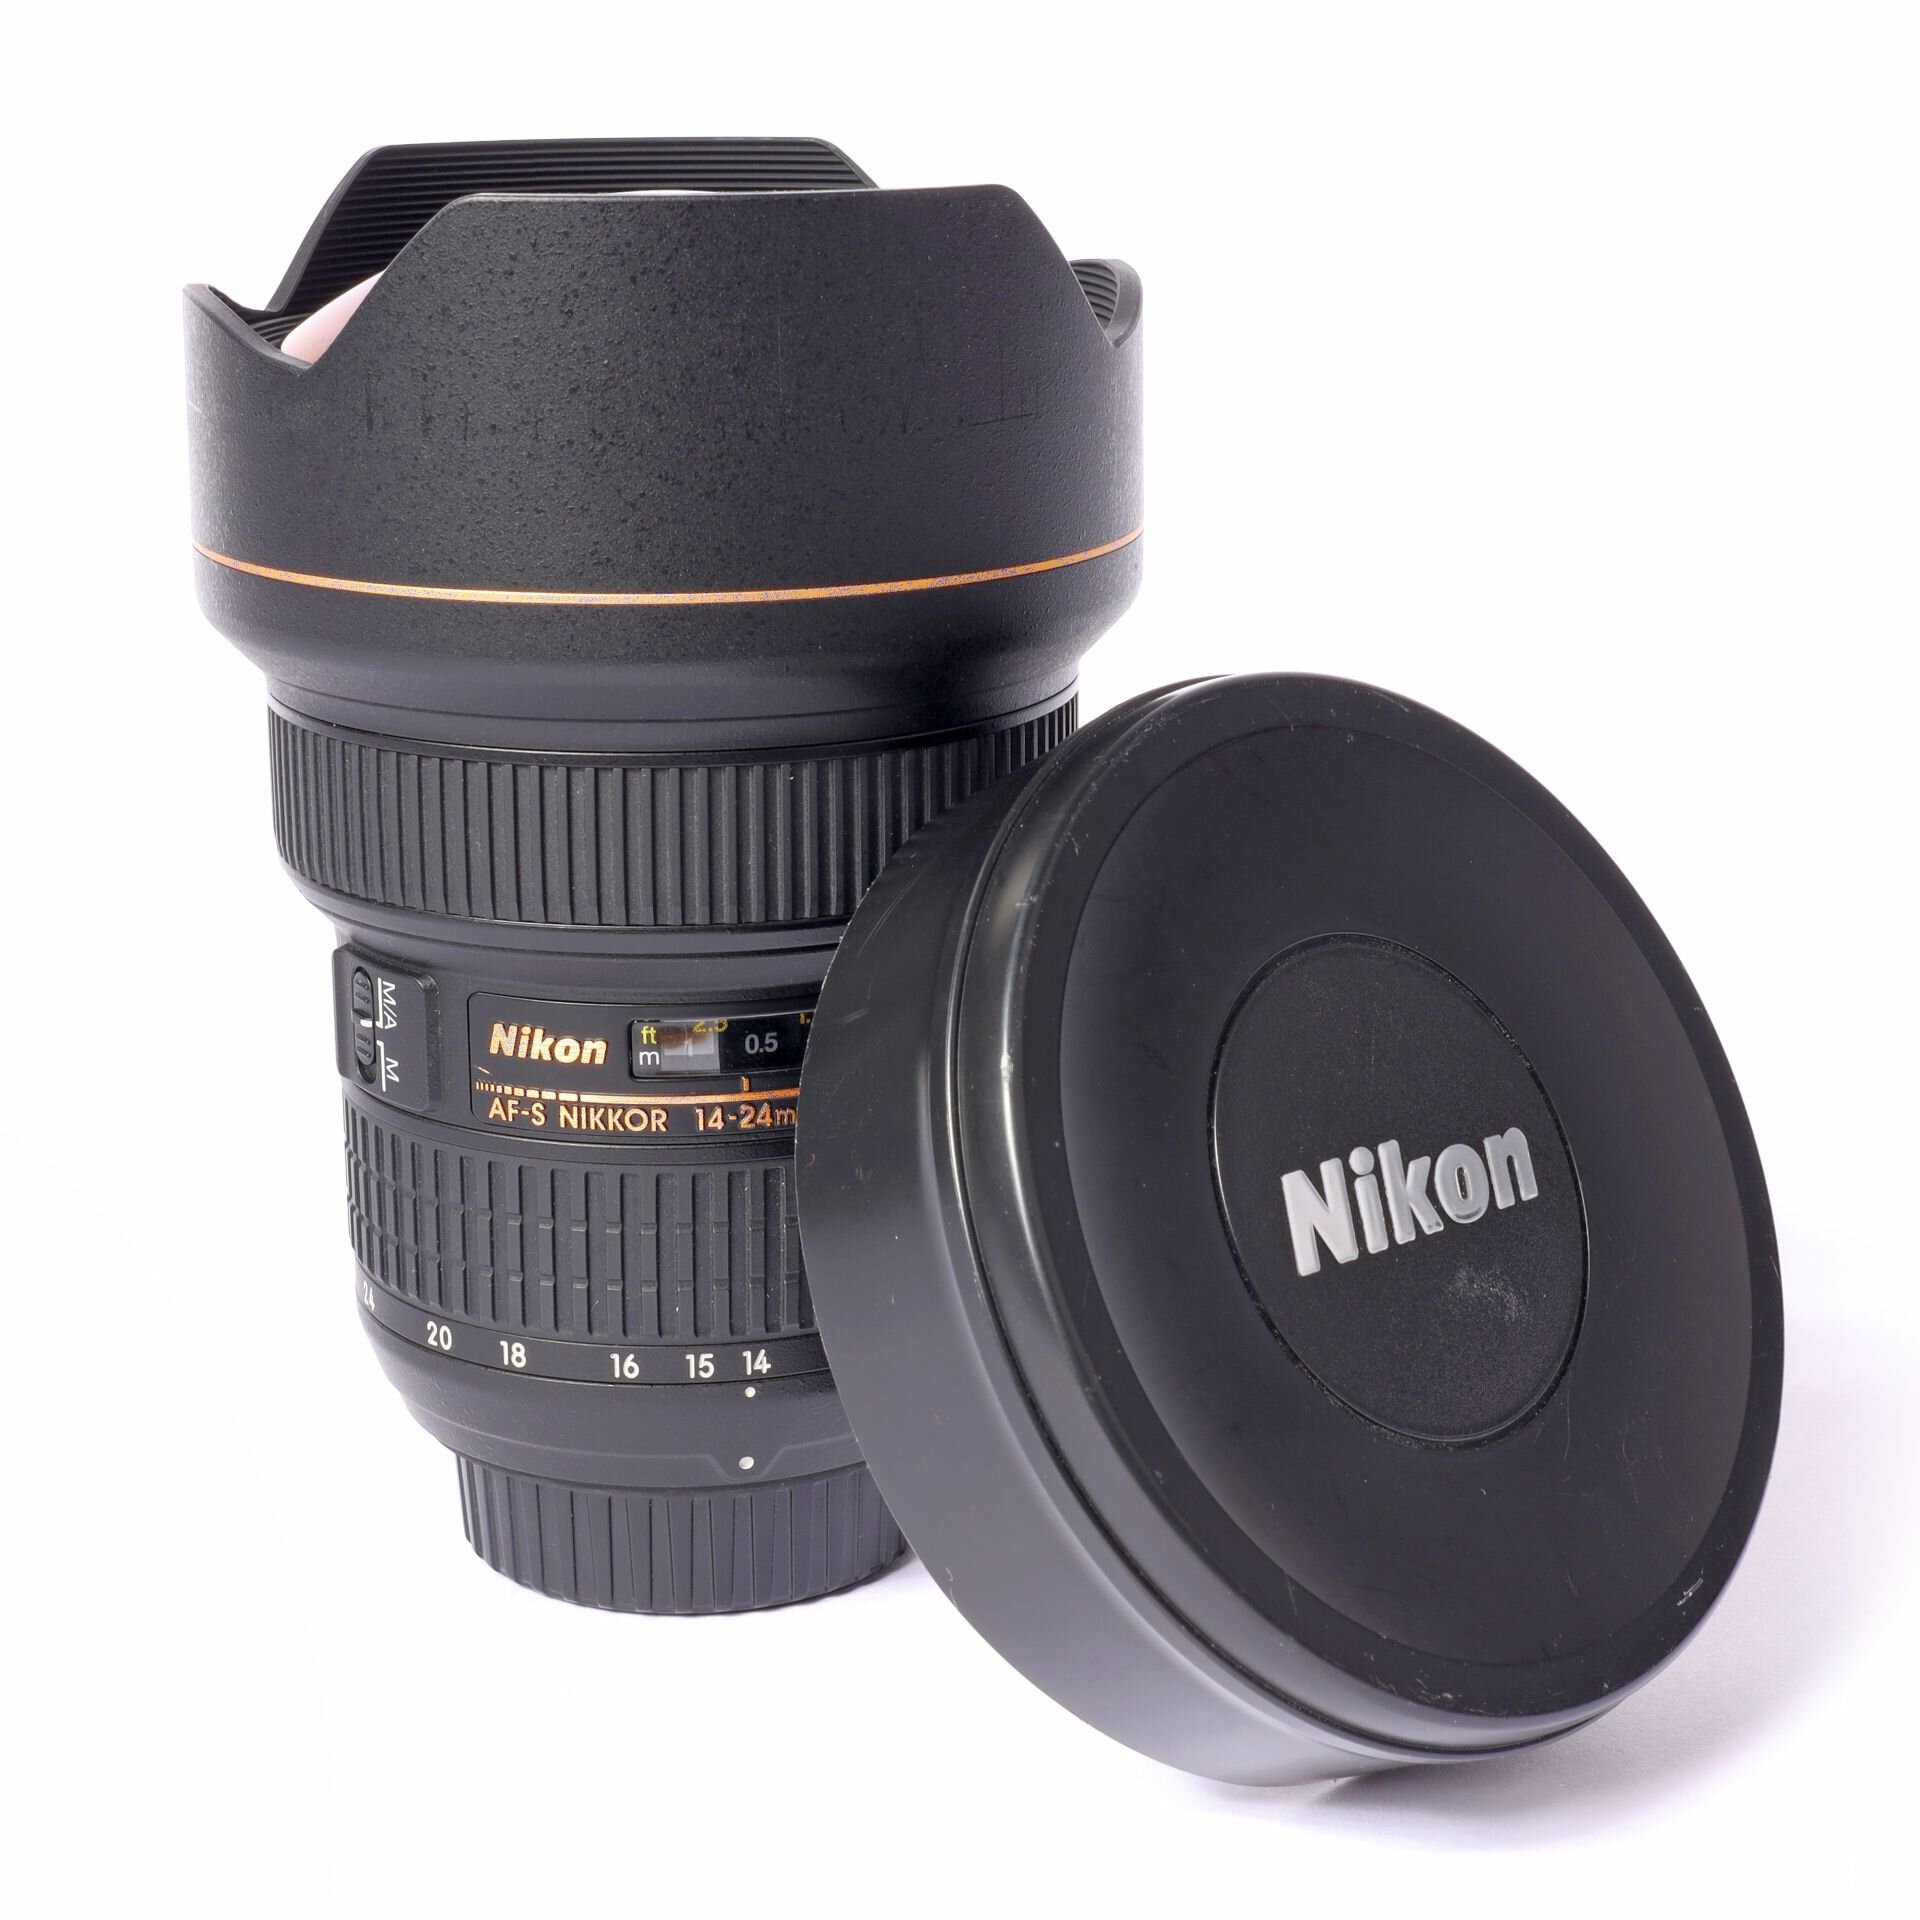 Nikon AFS Nikkor 2.8/14-24mm G ED N